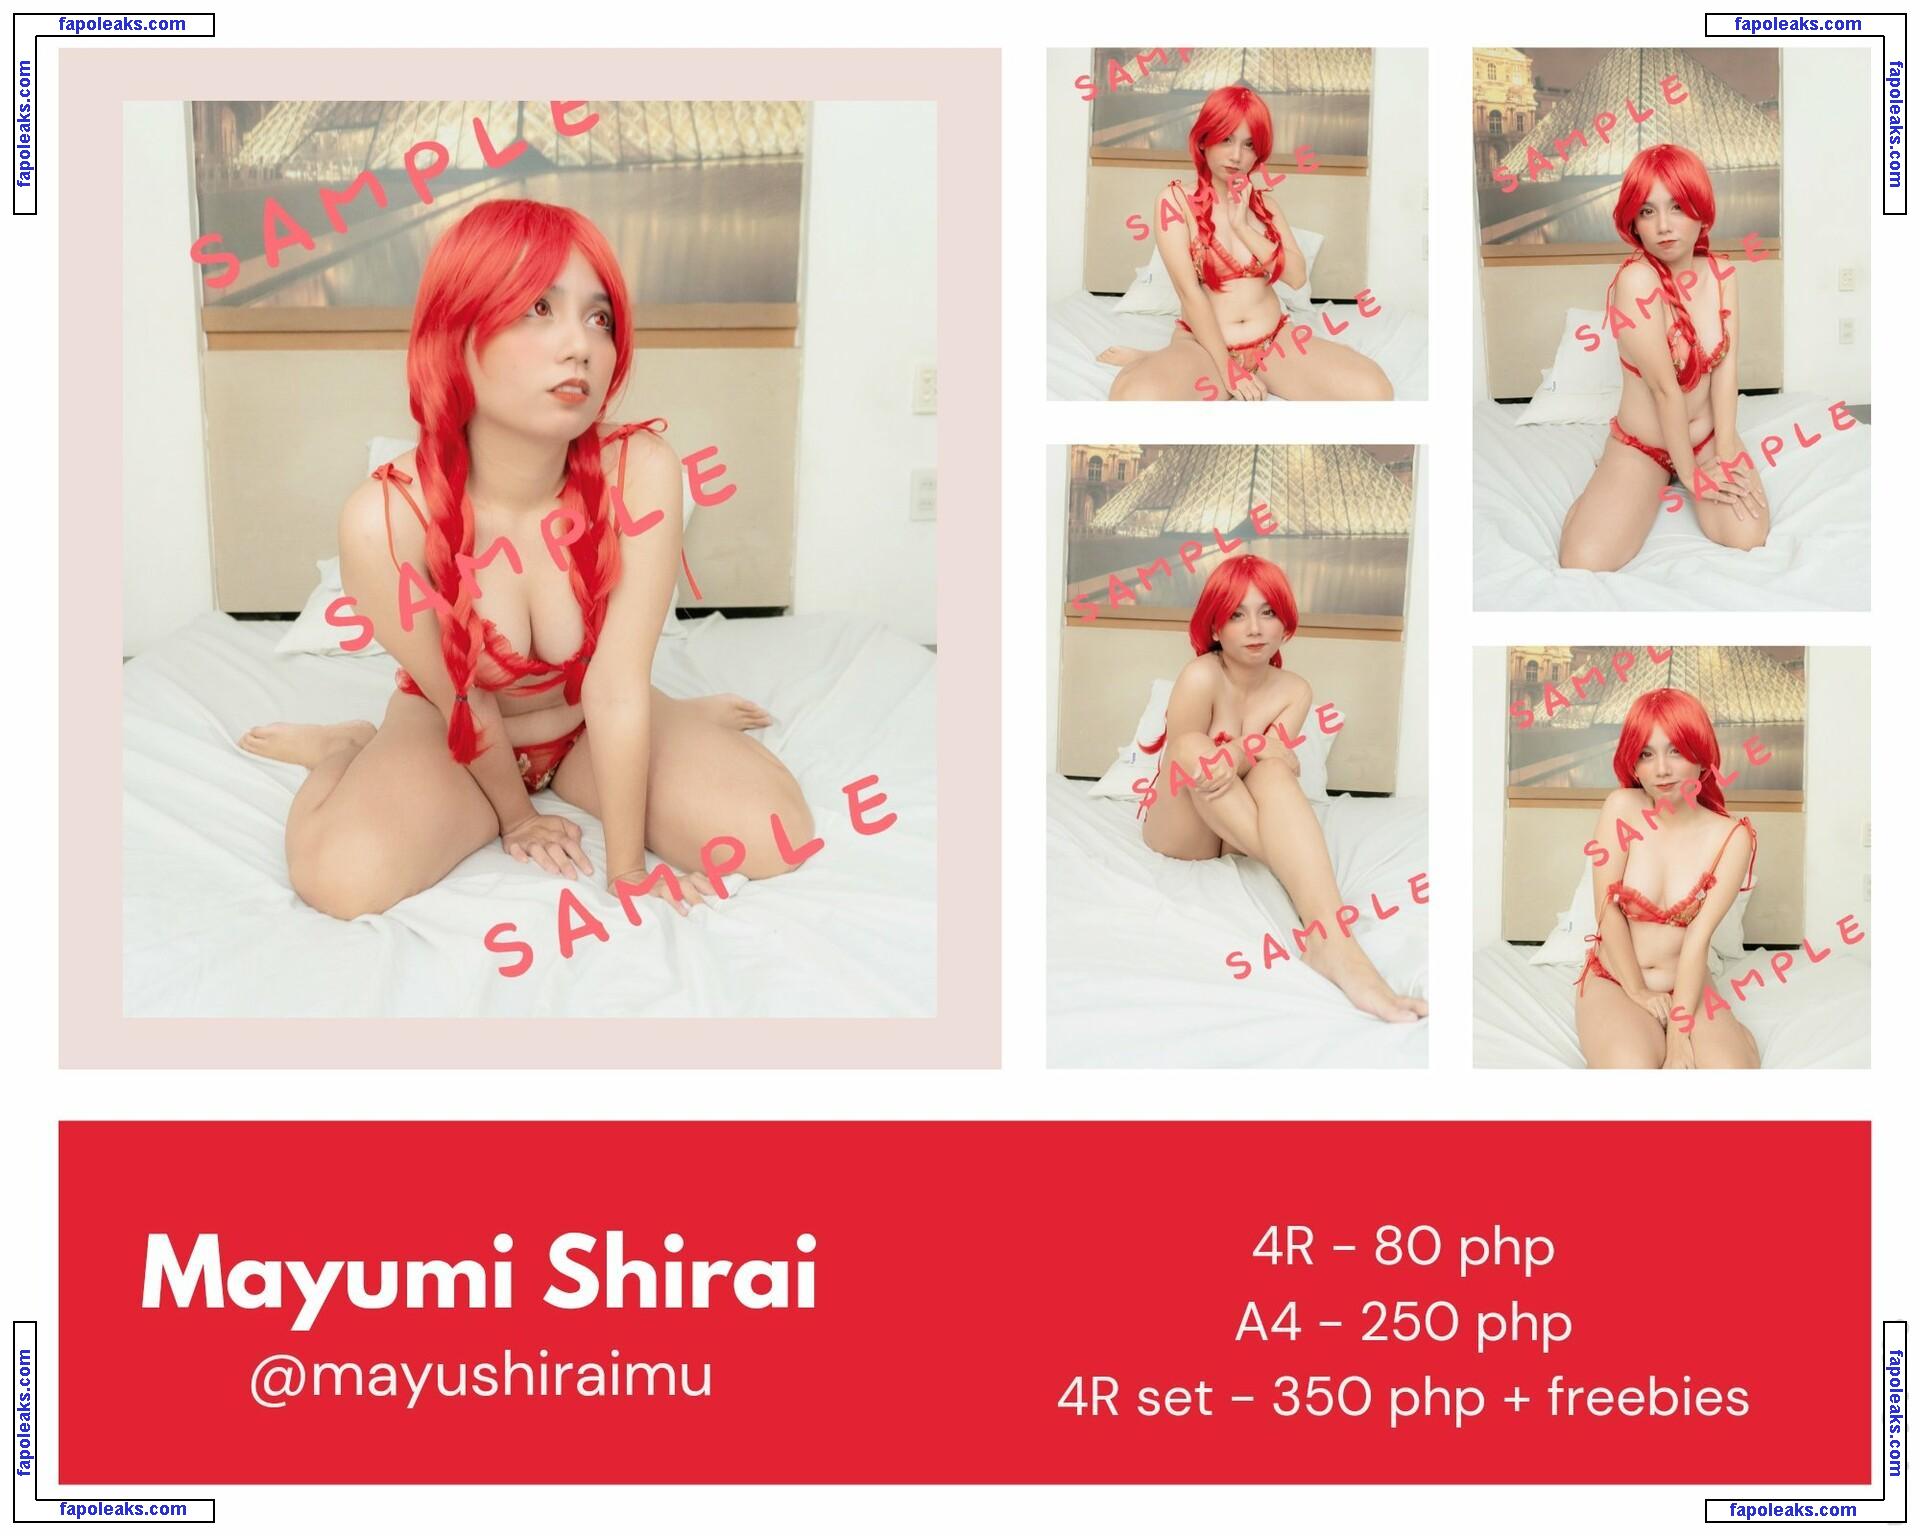 Mayumi / Yumi Shirai / jumayumin1 / lewdgirlfriend / yumi_shiraimu nude photo #0020 from OnlyFans